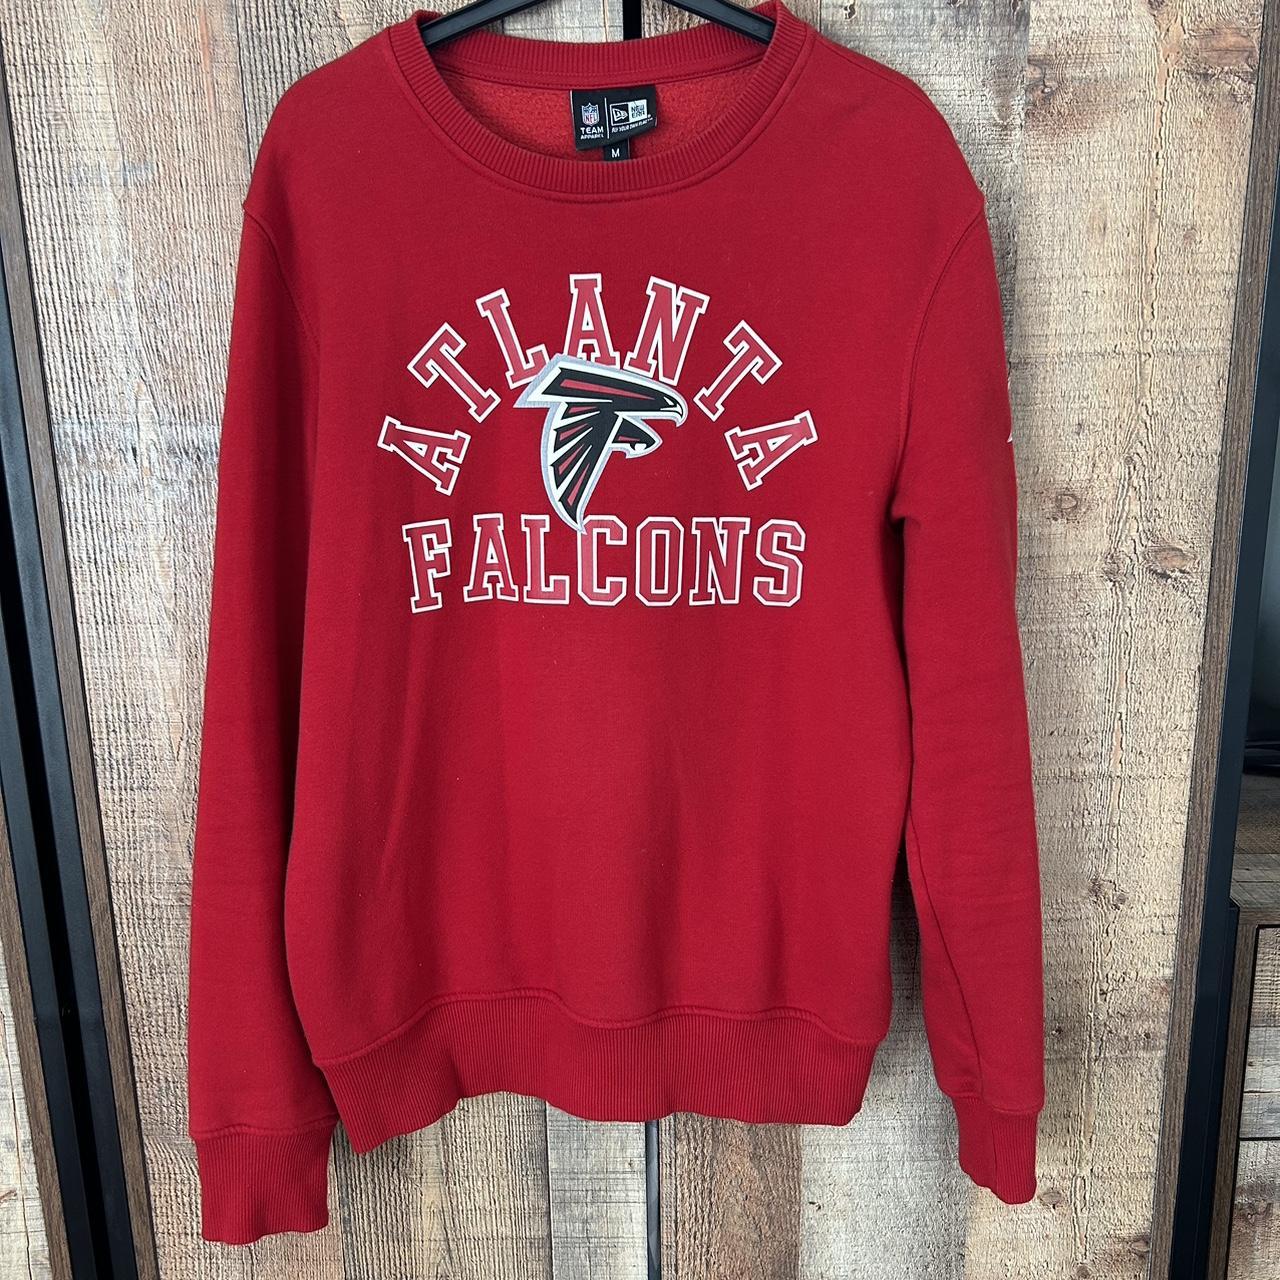 New Era Atlanta Falcons Sweatshirt Jumper Size... - Depop